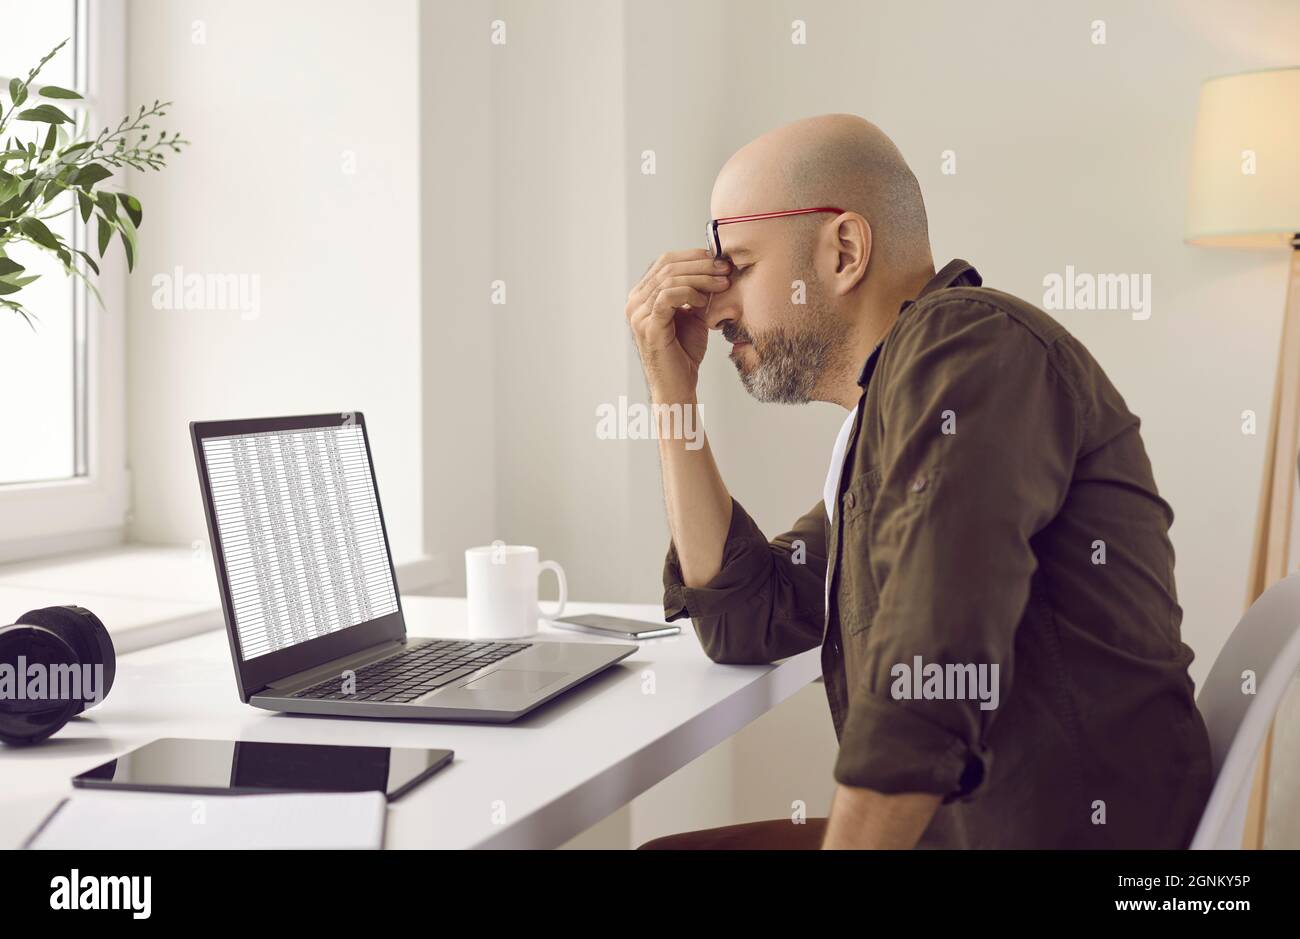 L'uomo stanco stressato ha affaticamento dell'occhio a causa del lavoro costante sul suo computer portatile Foto Stock